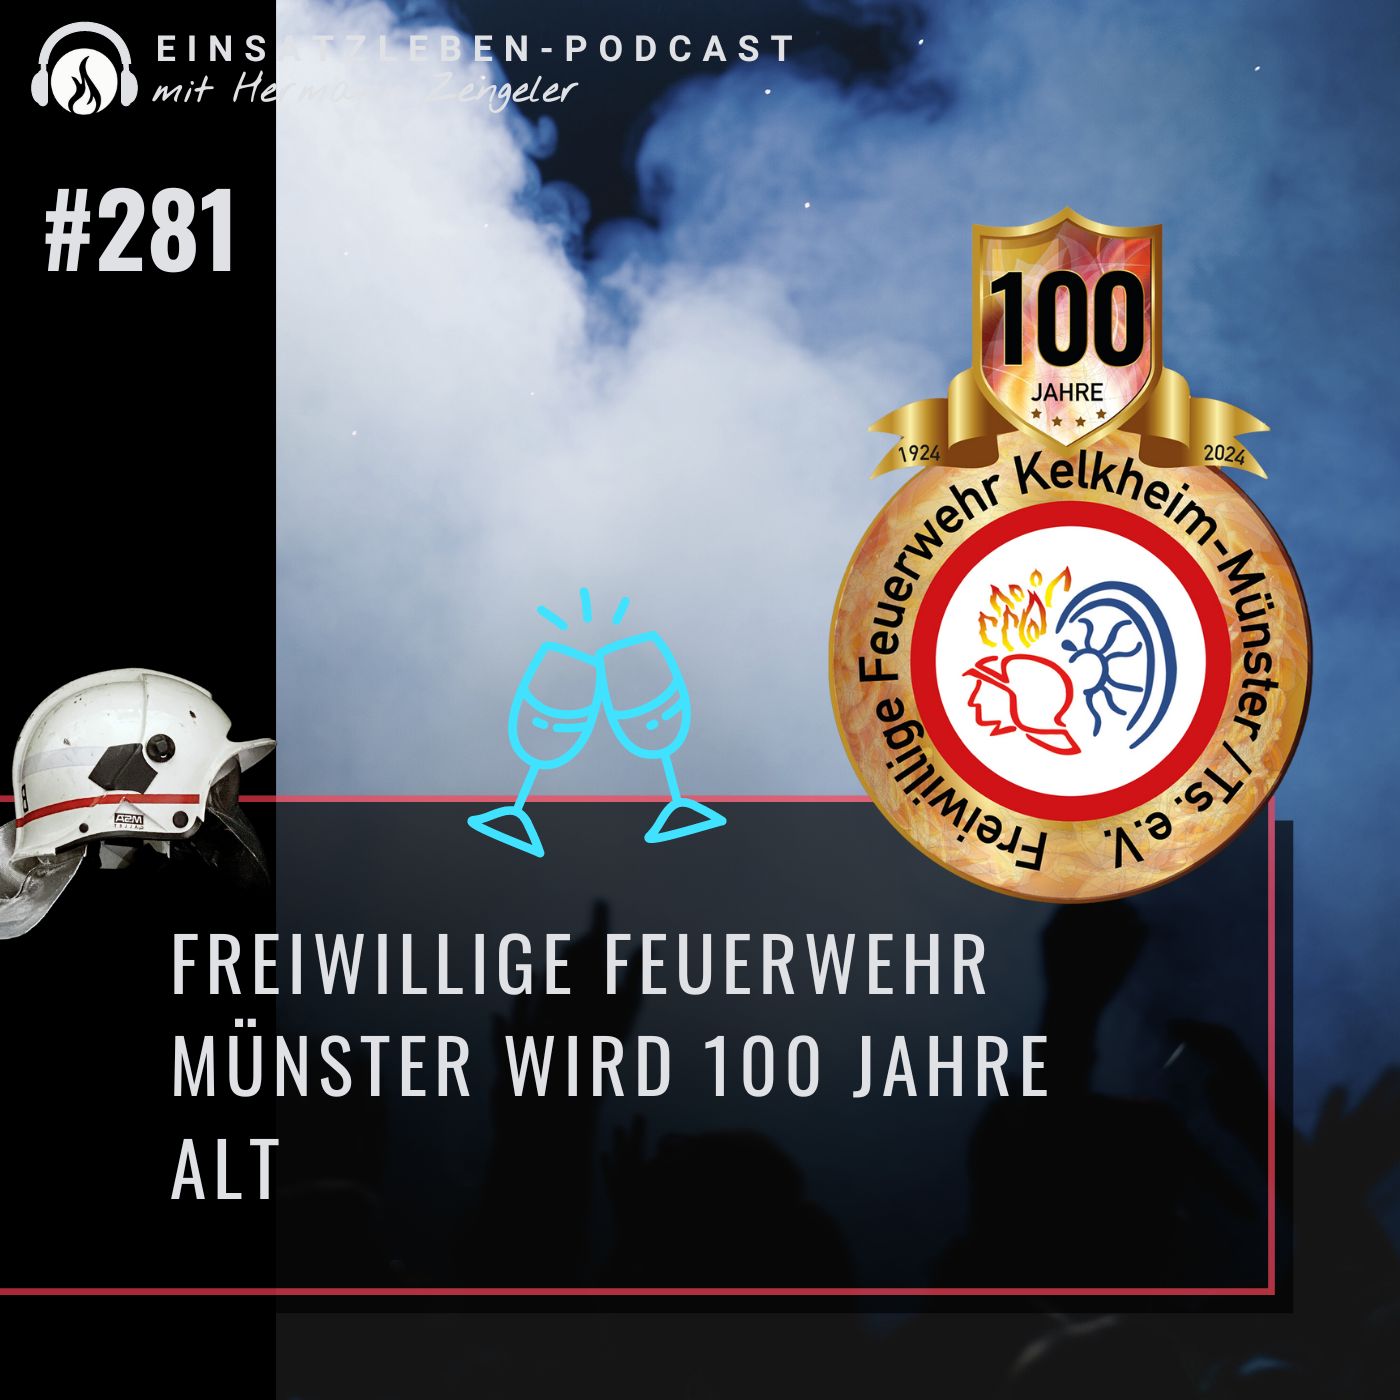 Freiwillige Feuerwehr Münster feiert 100-jähriges Bestehen - Interviewfolge